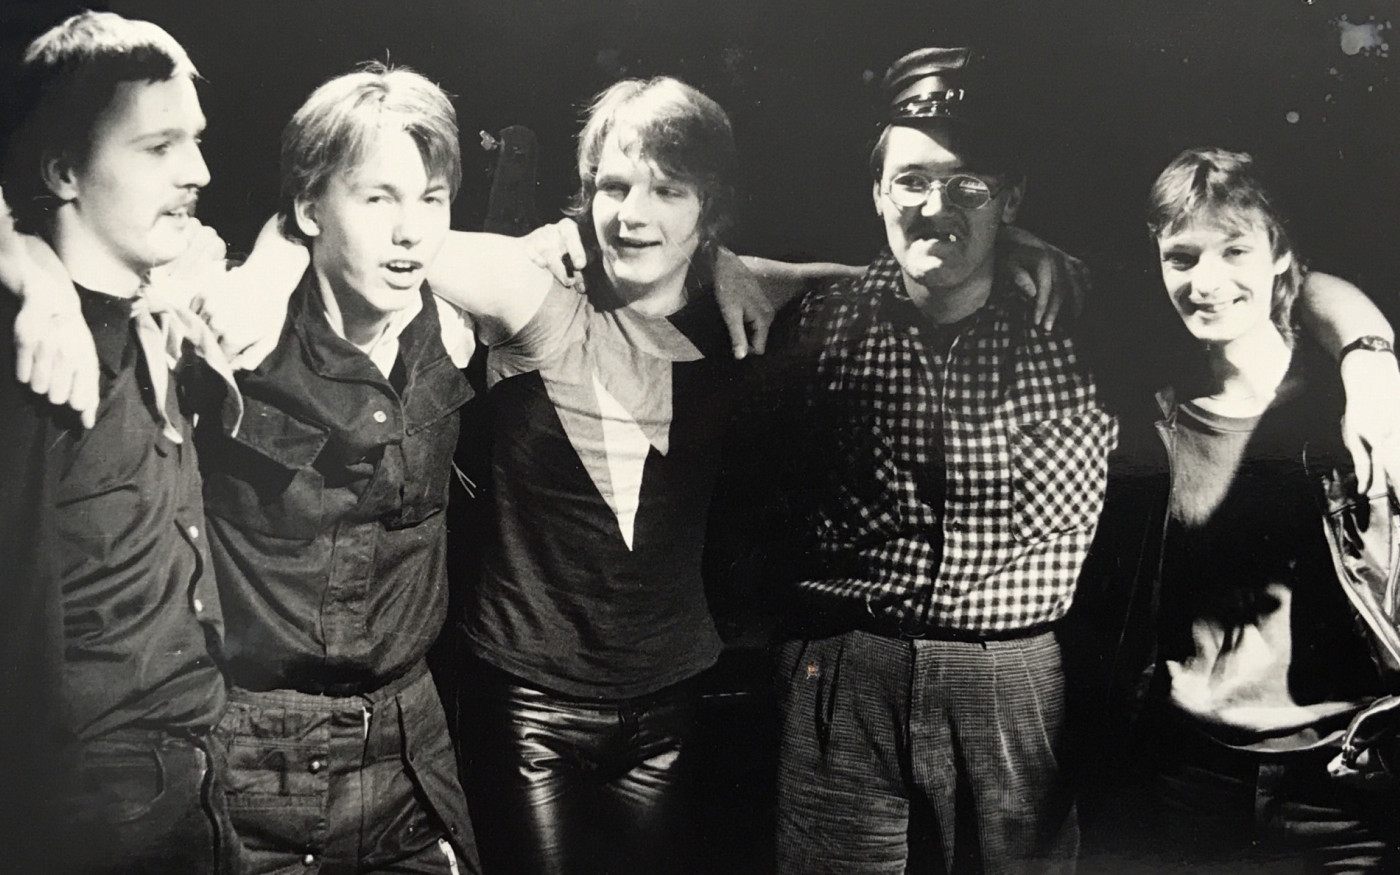 42 Jahre nach der Gründung planen sie ihr Comeback - In Leiferde fand die Waverock-Band Clockwork Orange zusammen